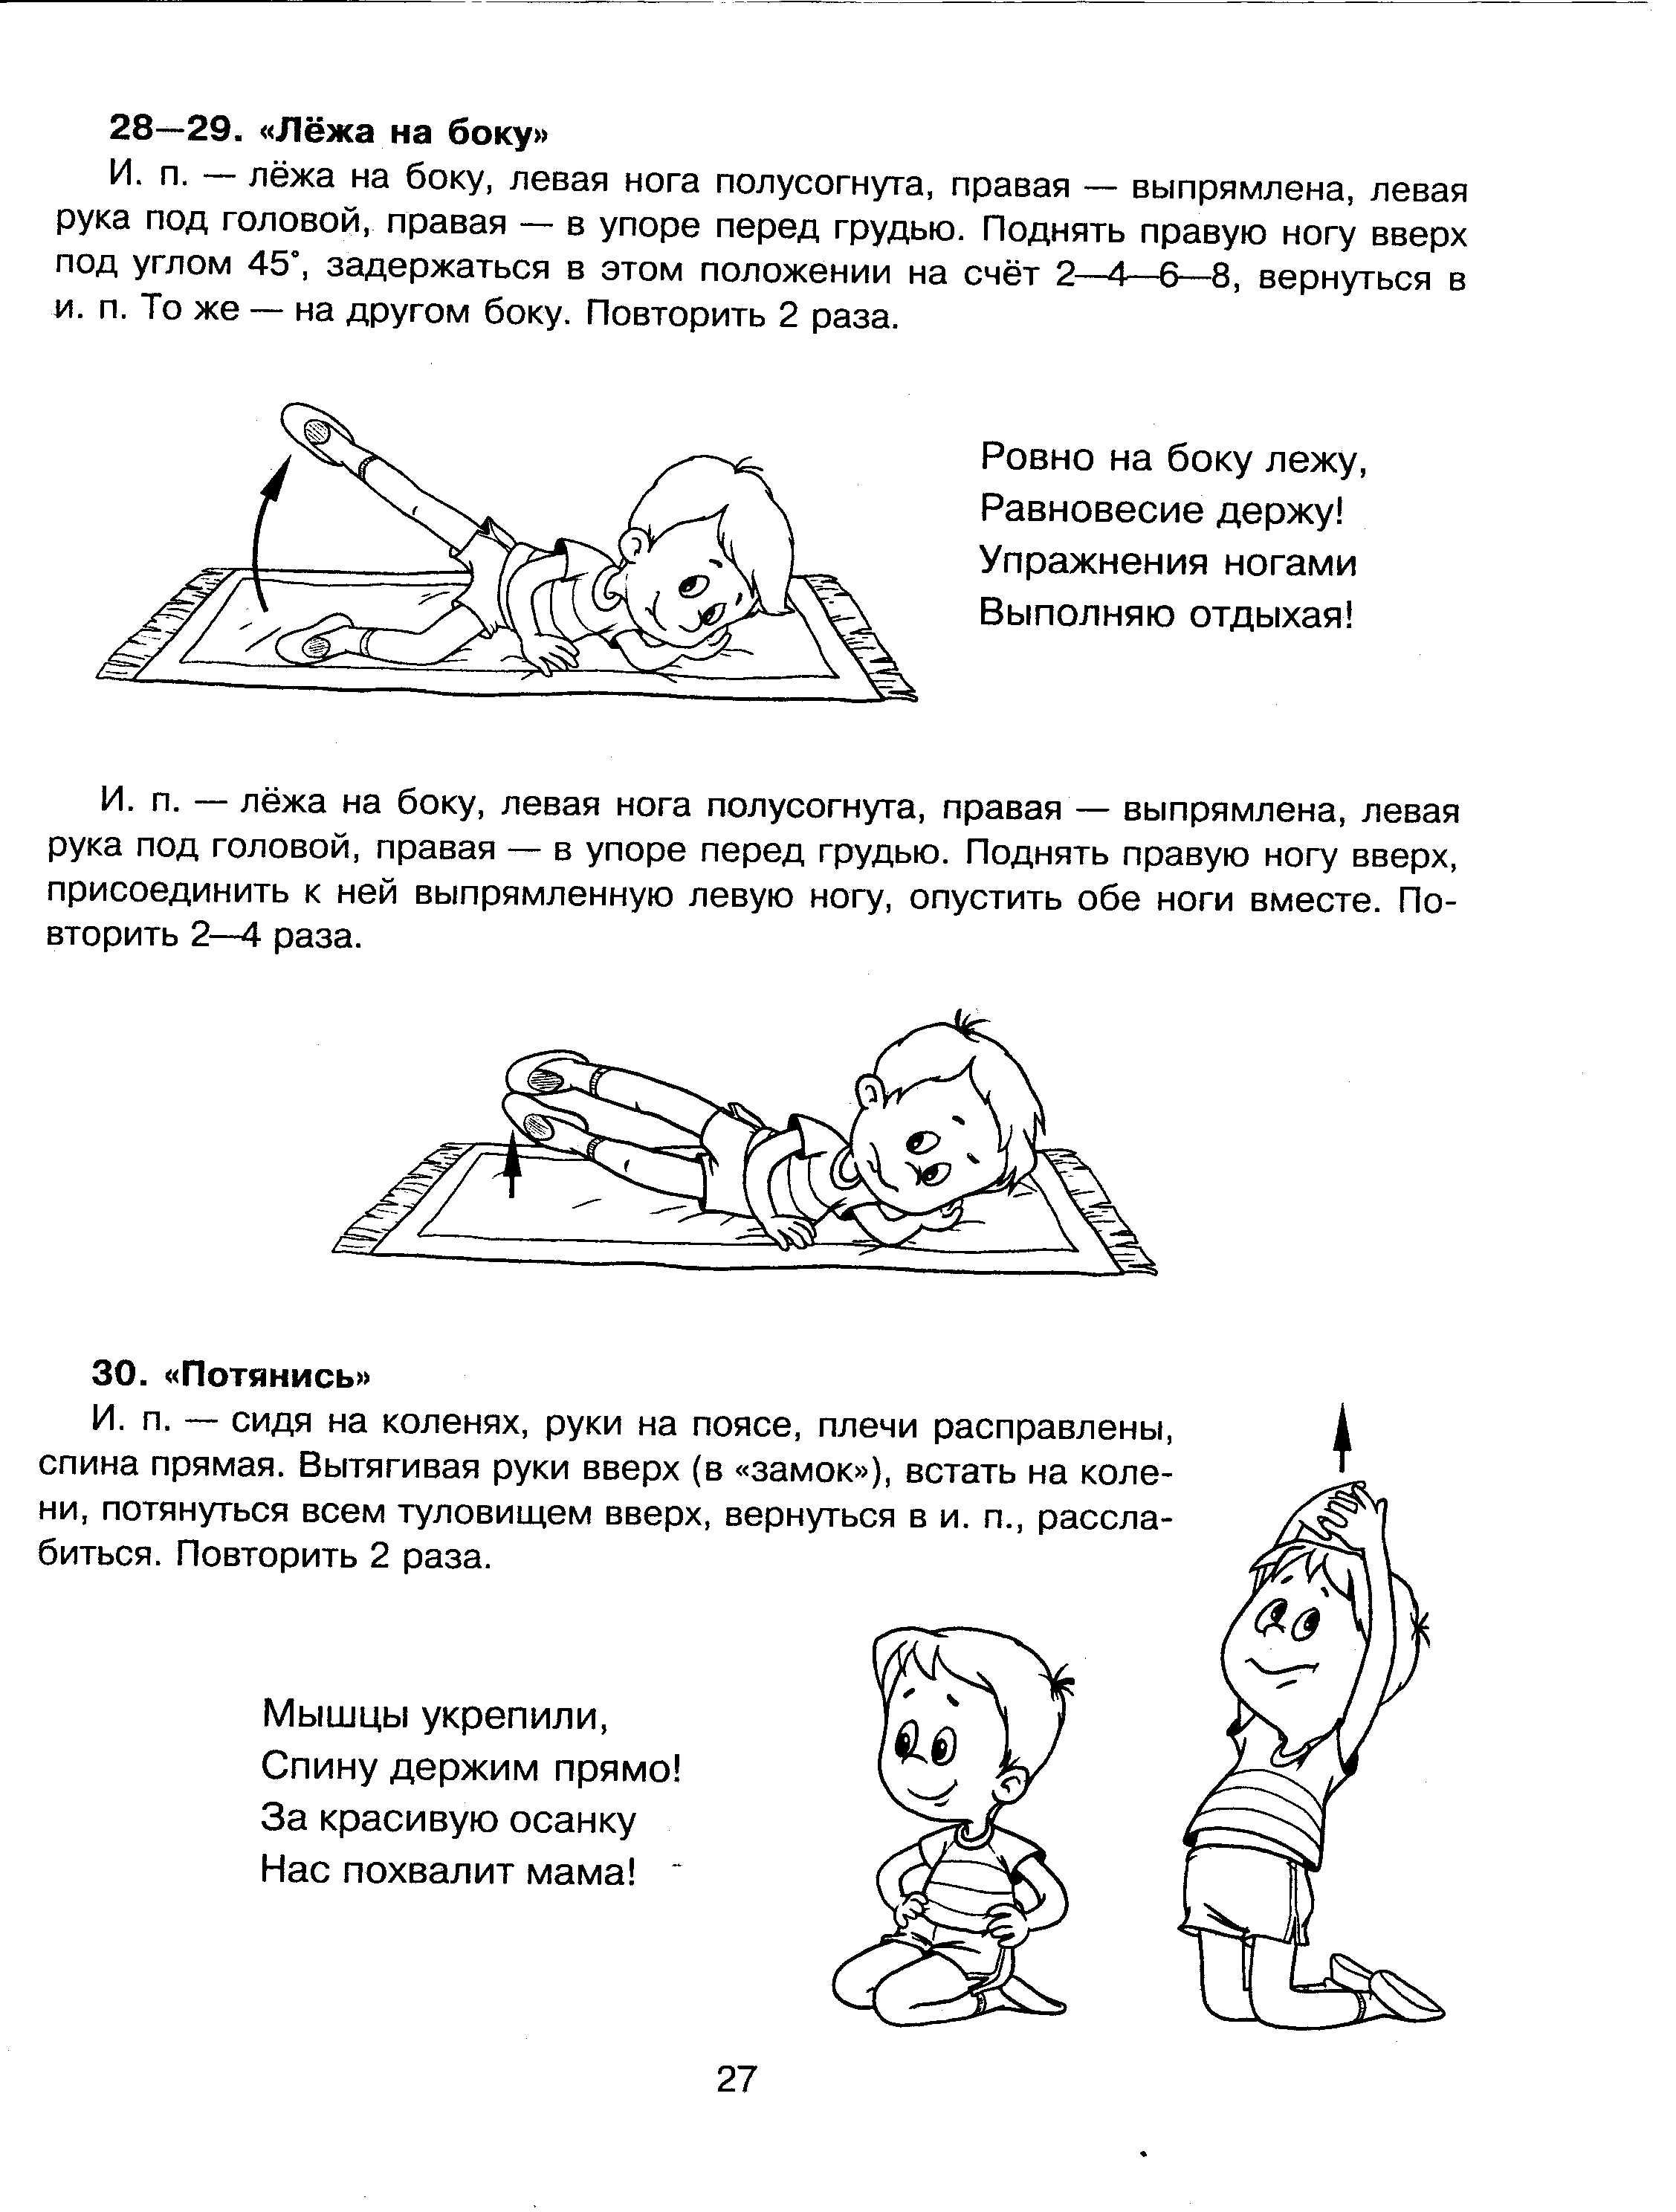 гимнастика пробуждения картинки для детей